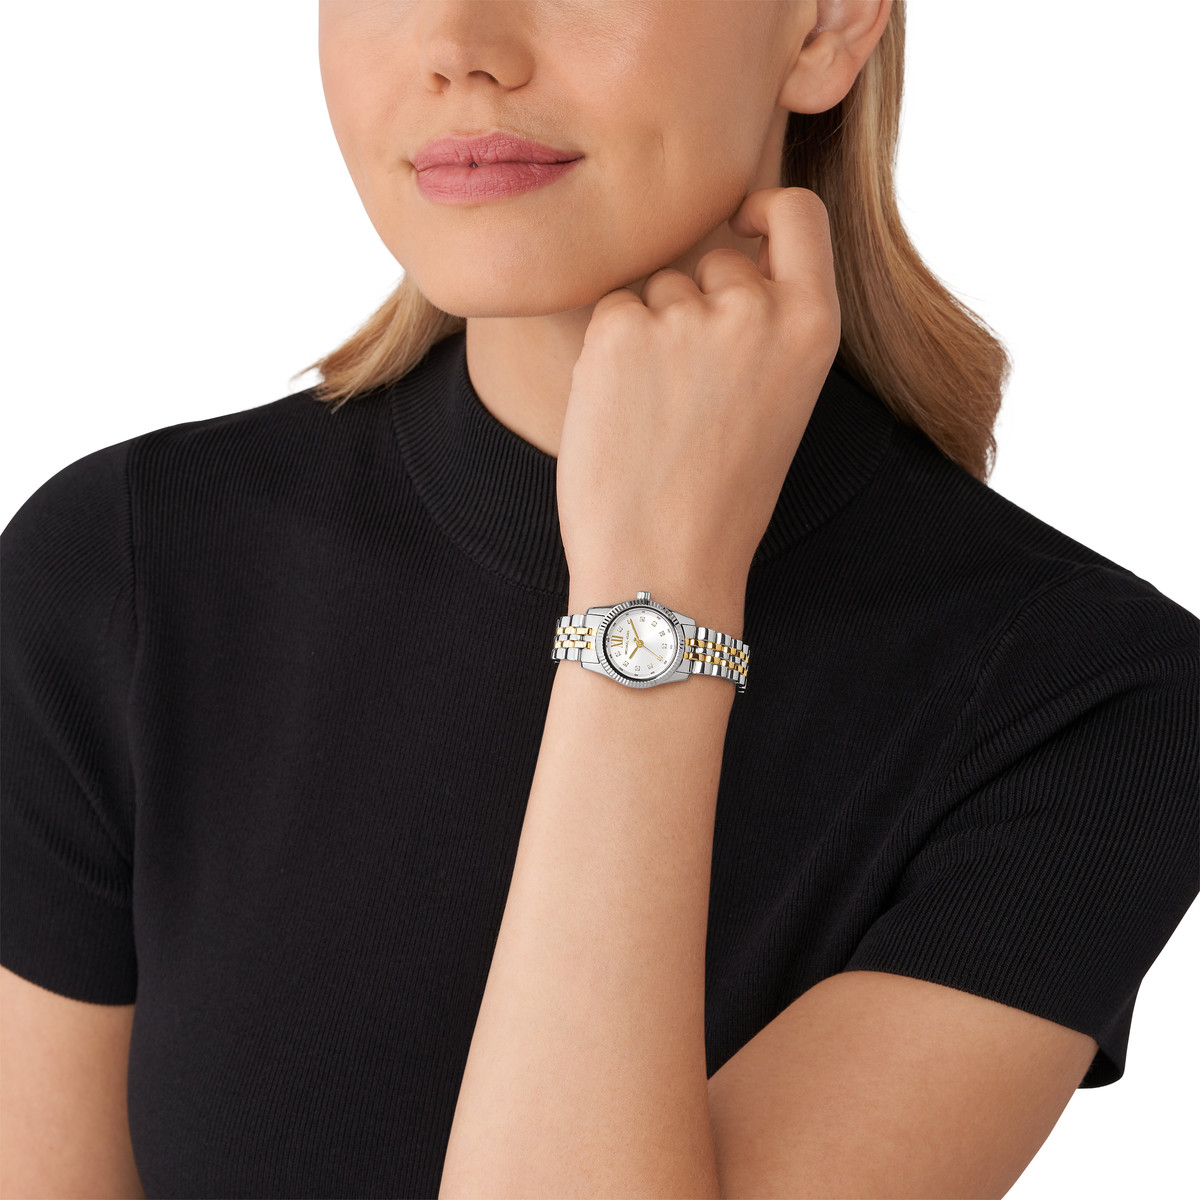 Montre MICHAEL KORS lexington femme bracelet acier inoxydable bicolore - vue porté 1